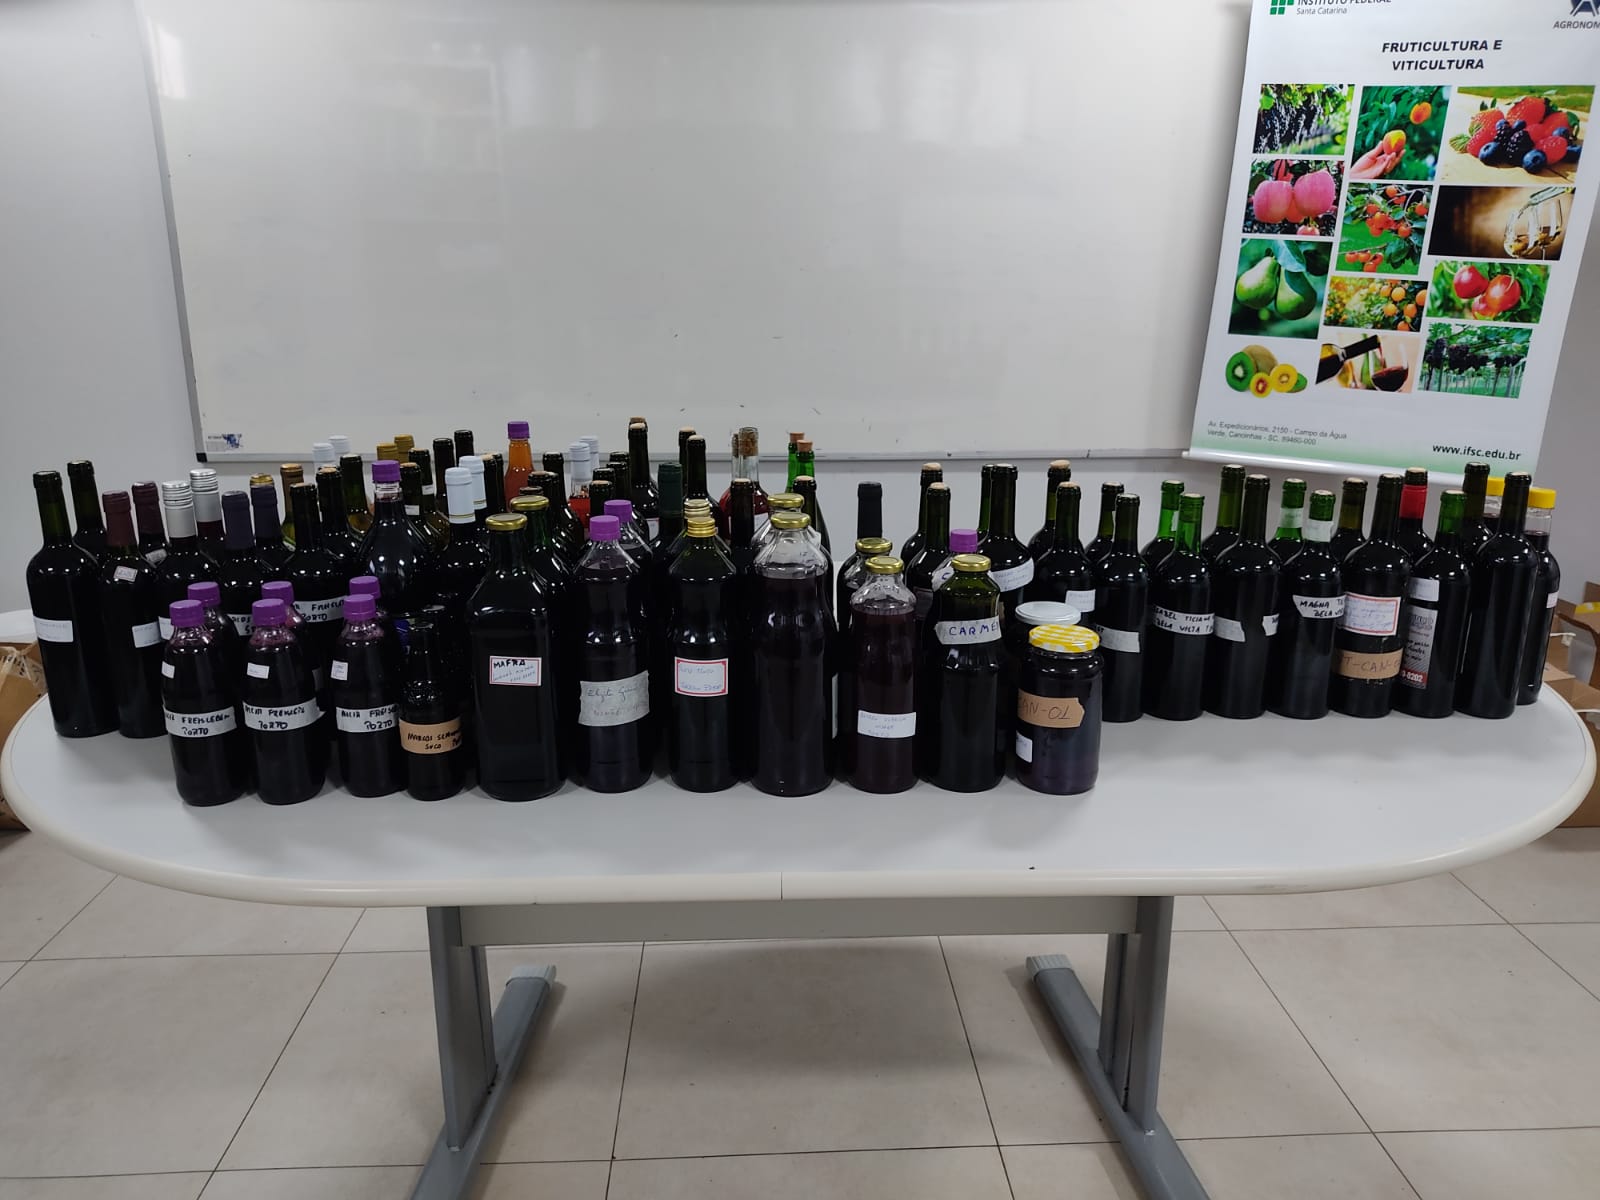 Concurso recebeu amostras de suco de uva, vinho tinto, vinho branco e vinho rosé